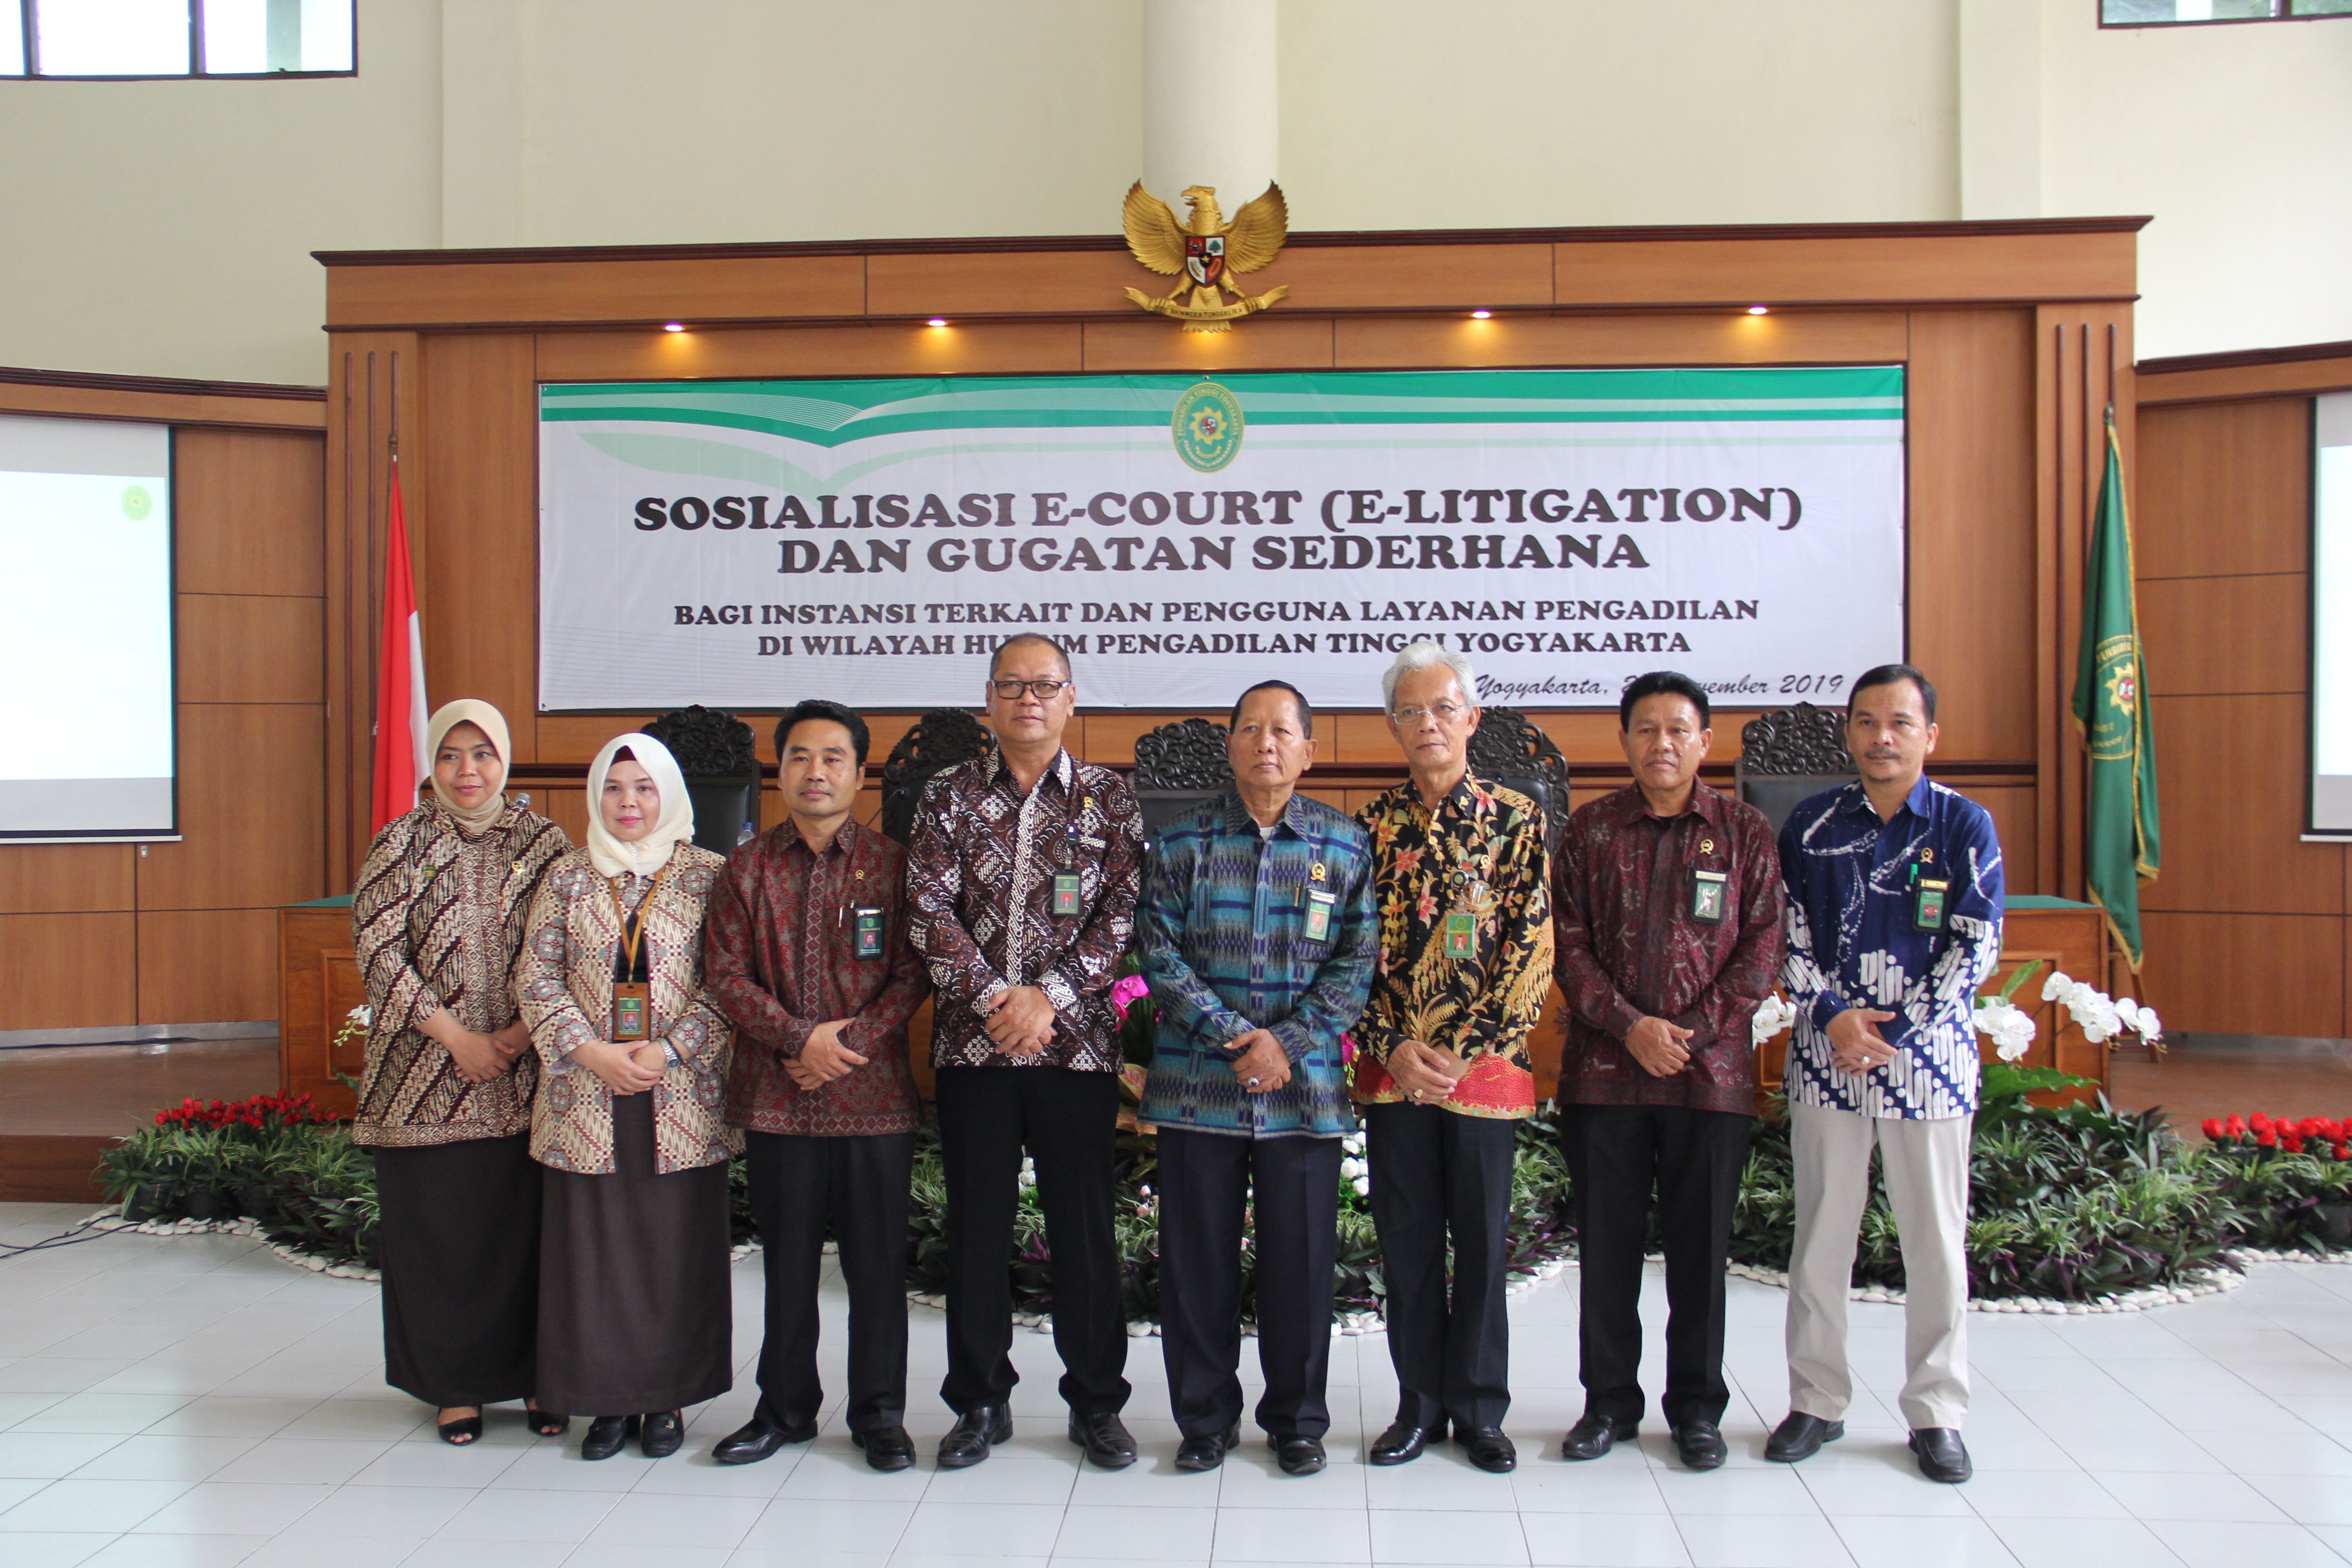 Sosialisasi E-Court, E-litigasi dan Gugatan Sederhana, dirangkaikan dengan Peresmian Co-Working Space Pengadilan Negeri Yogyakarta